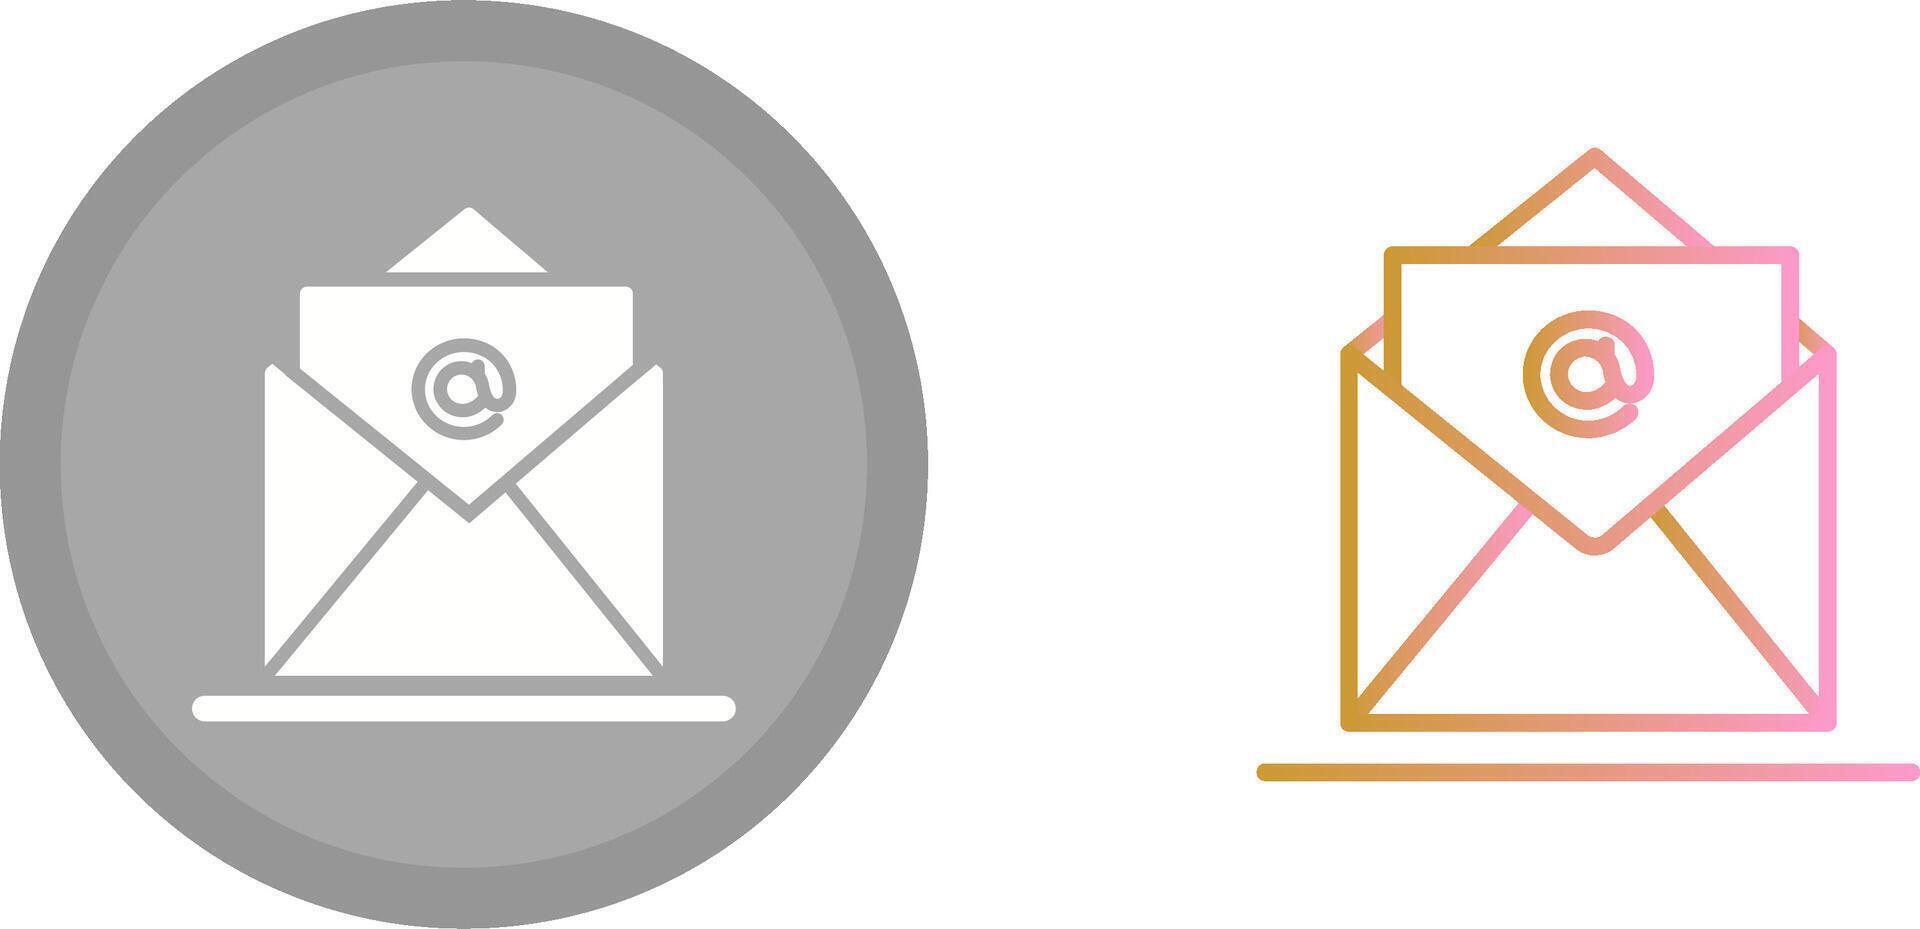 Mail Icon Design vector